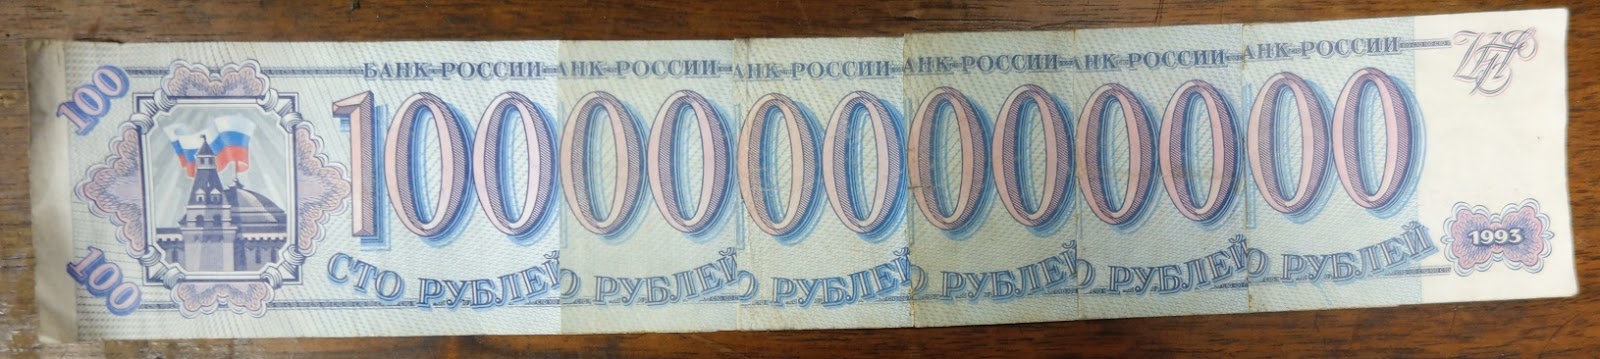 1 000 000 рублей купюра. Купюра 1000000 рублей. Бумажка 1000000 рублей. Миллион рублей одной бумажкой. Миллион рублей одной купюрой.